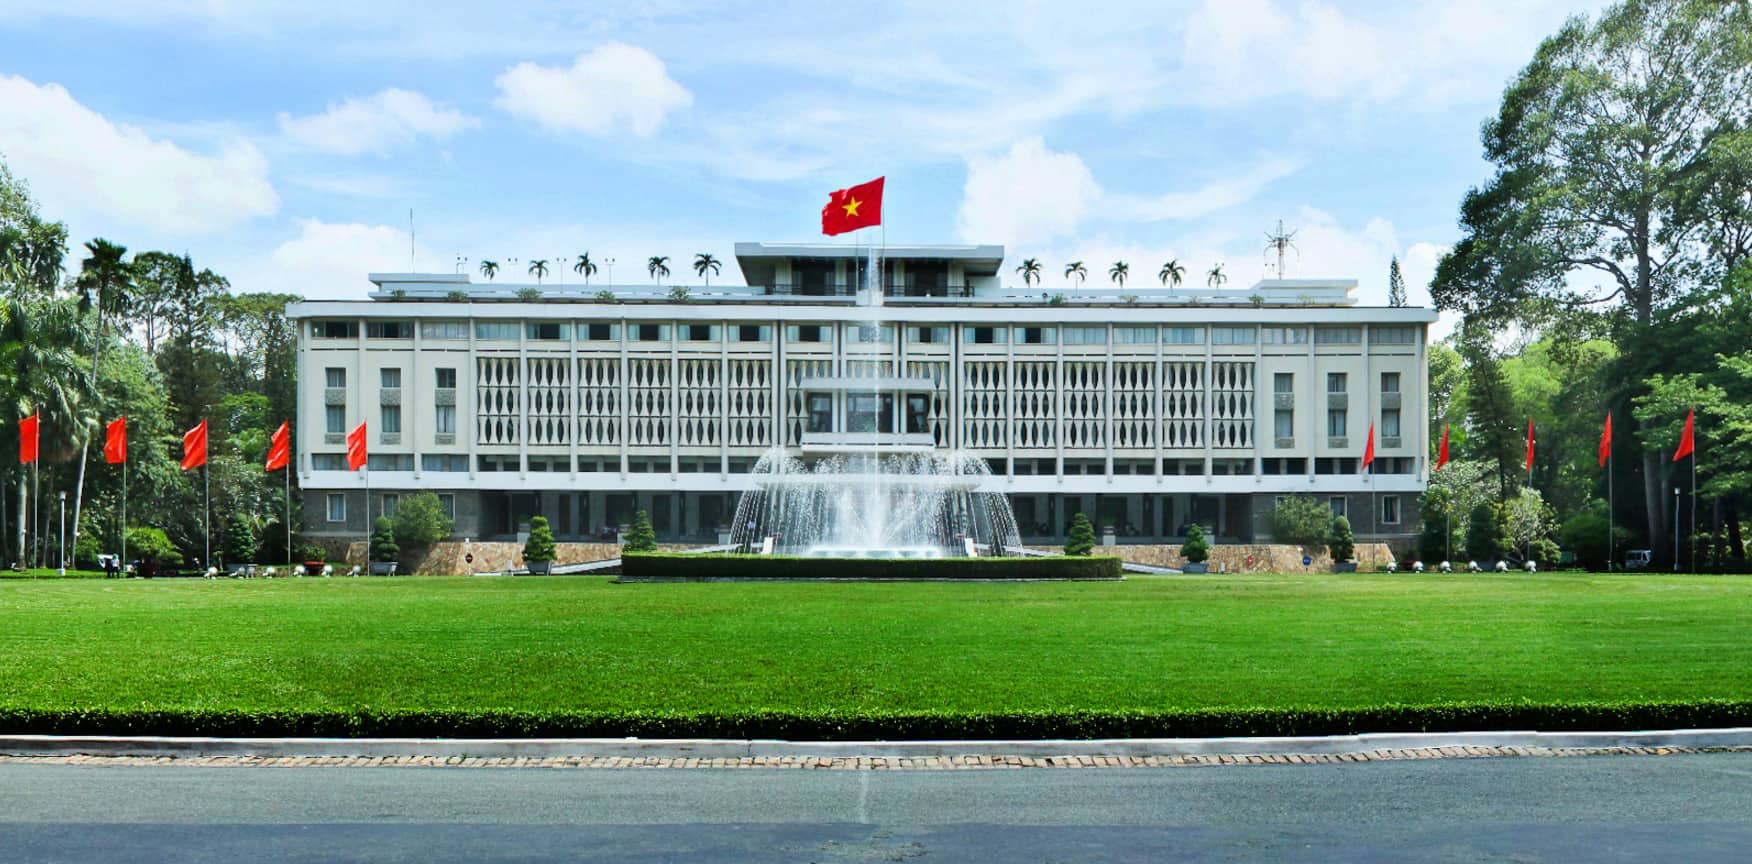 Dinh độc lập Sài Gòn - Quá khứ huy hoàng của lịch sử dân tộc